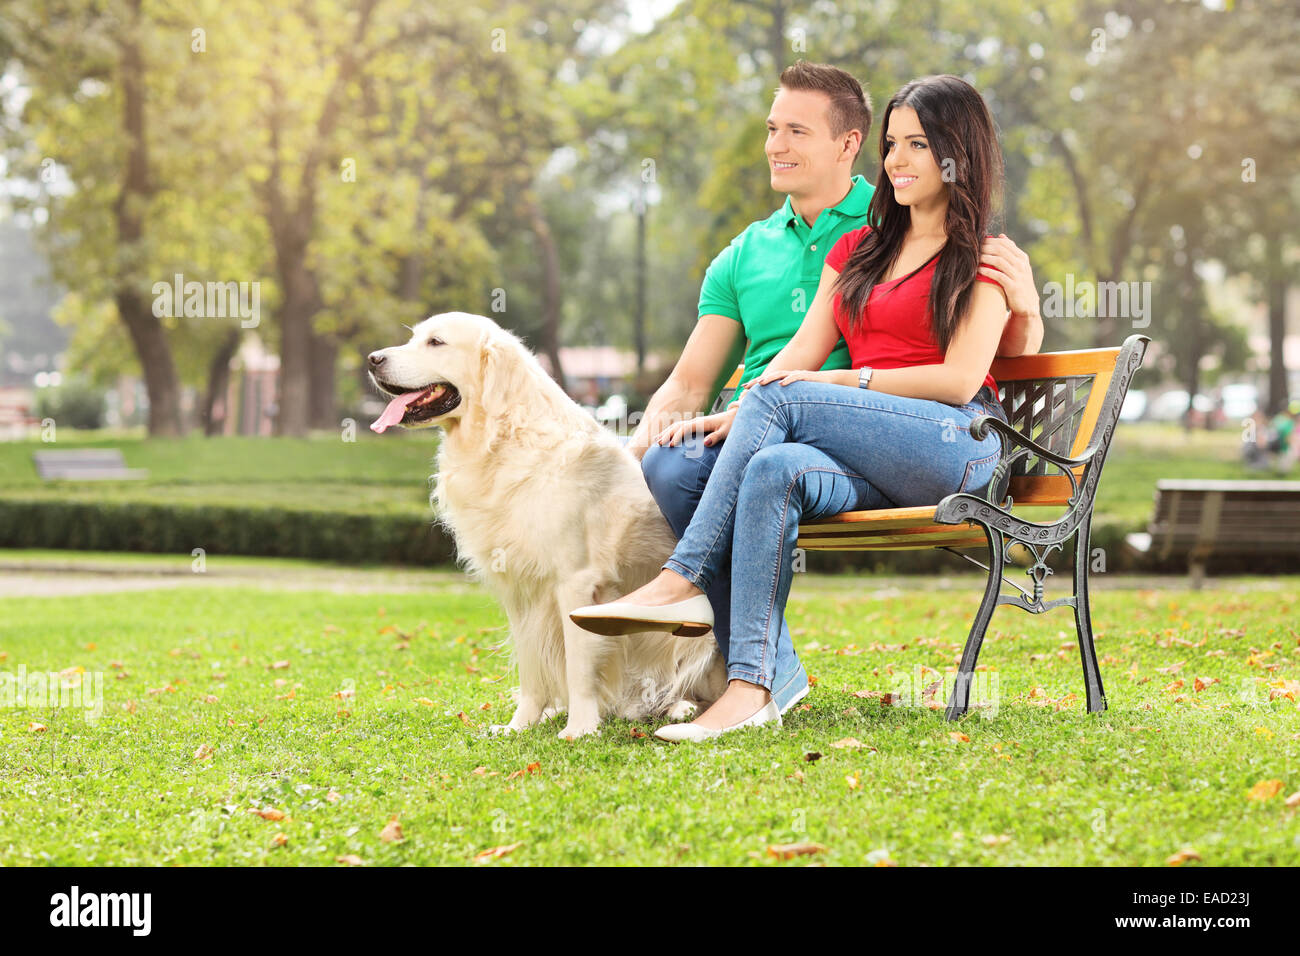 Coppia giovane seduto nel parco con un cane su una panca in legno Foto Stock